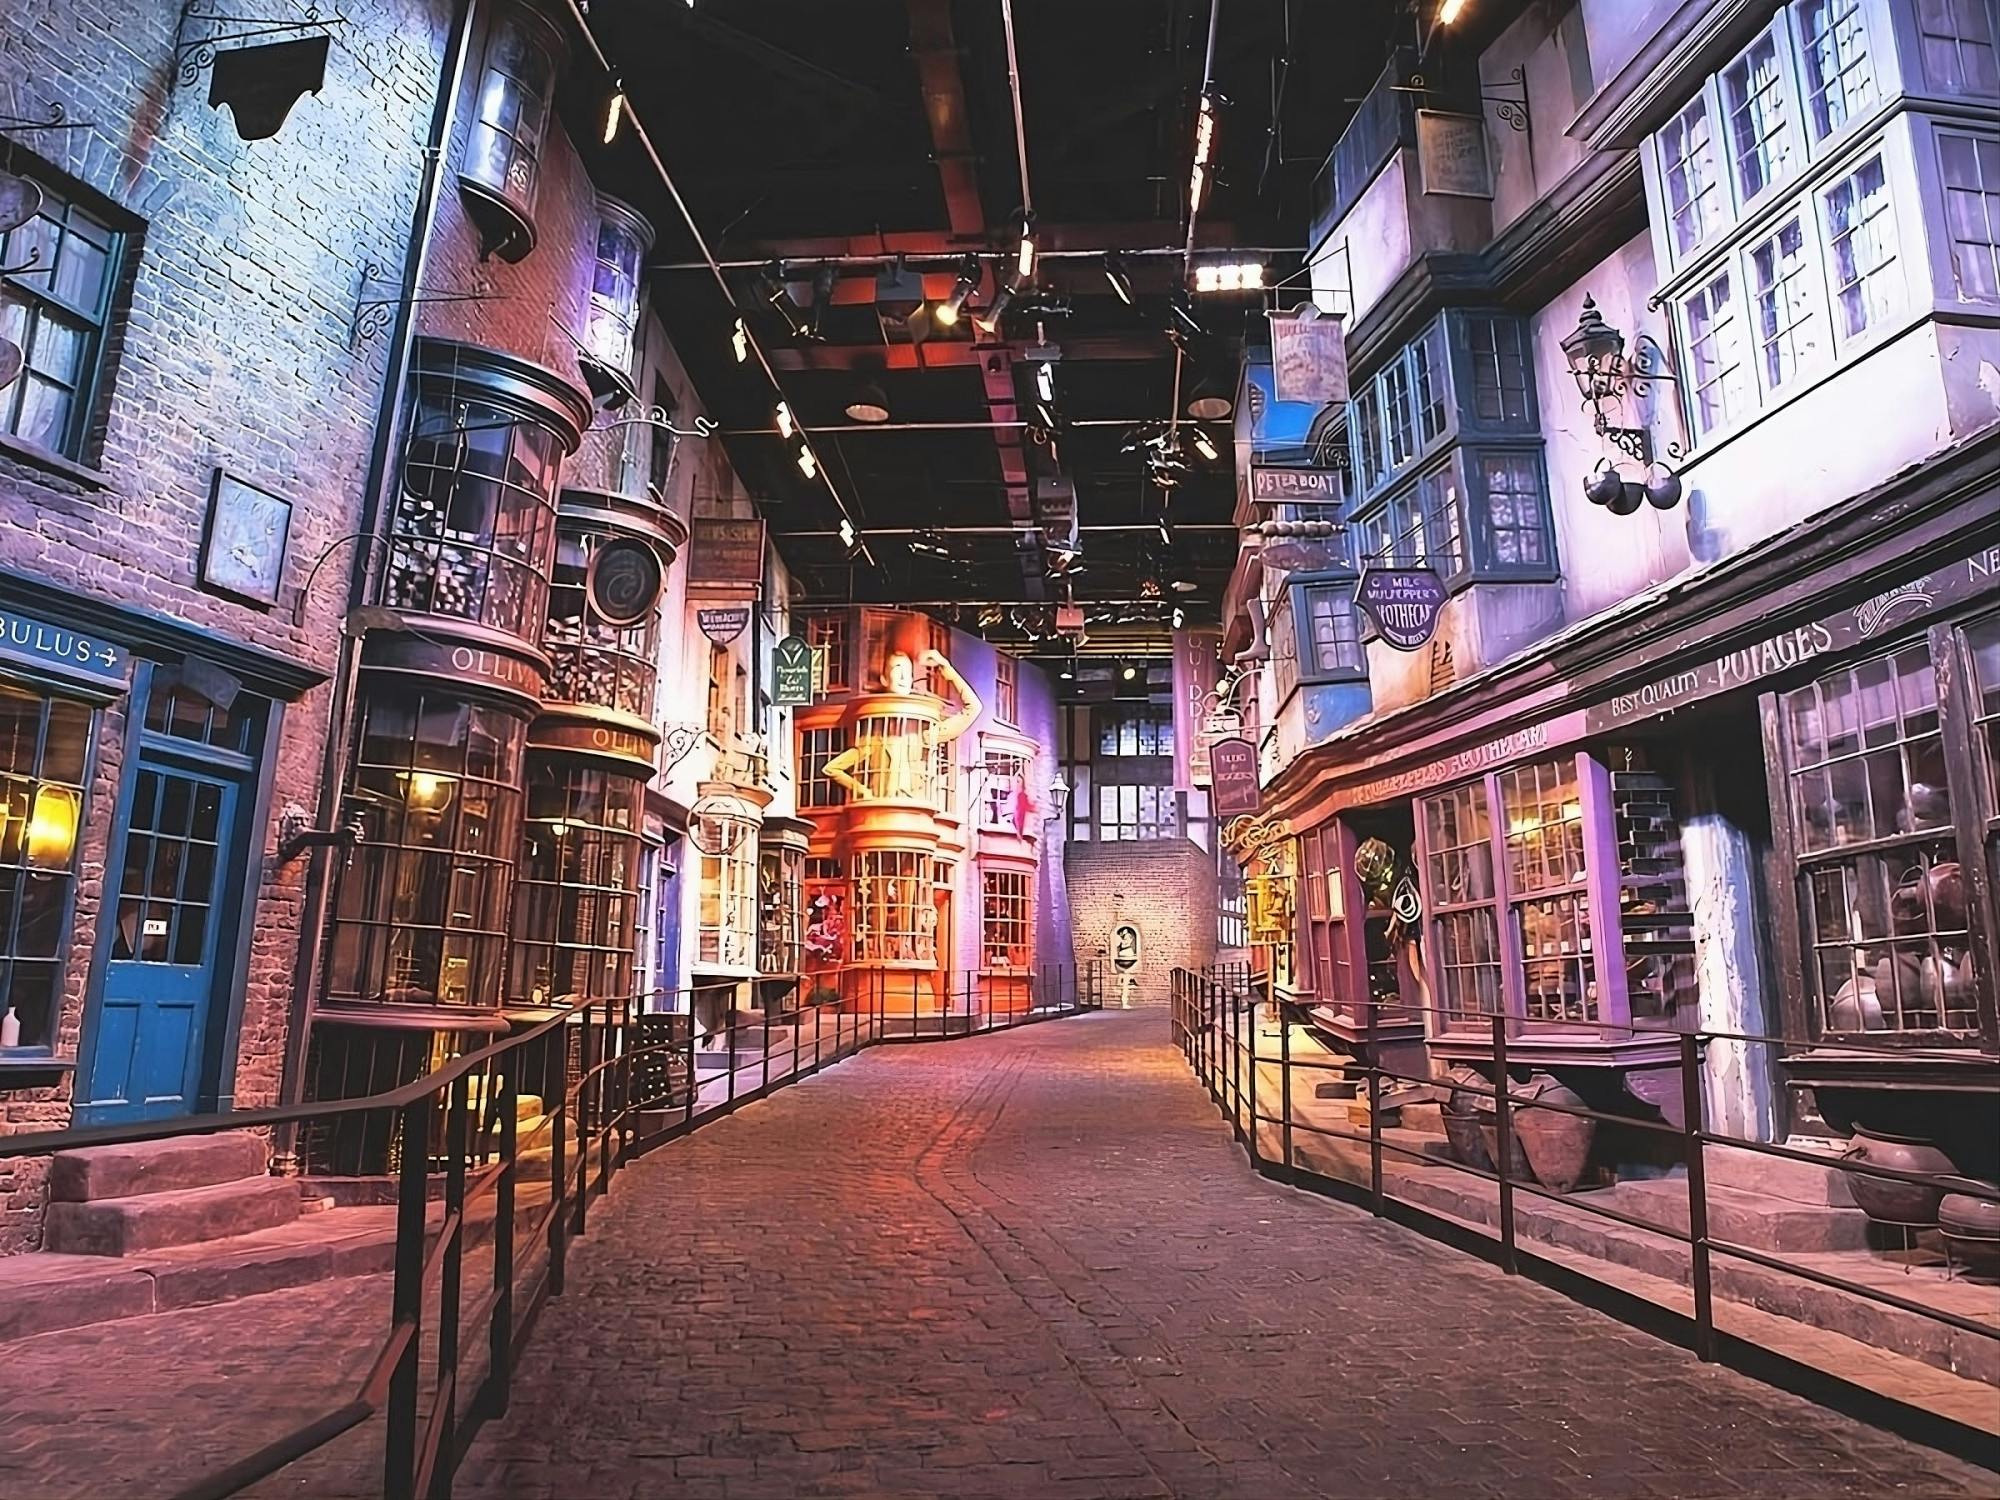 Vanuit Londen: Warner Bros. Studiotour Londen - The Making of Harry Potter-toegangsticket en begeleide treintransfer